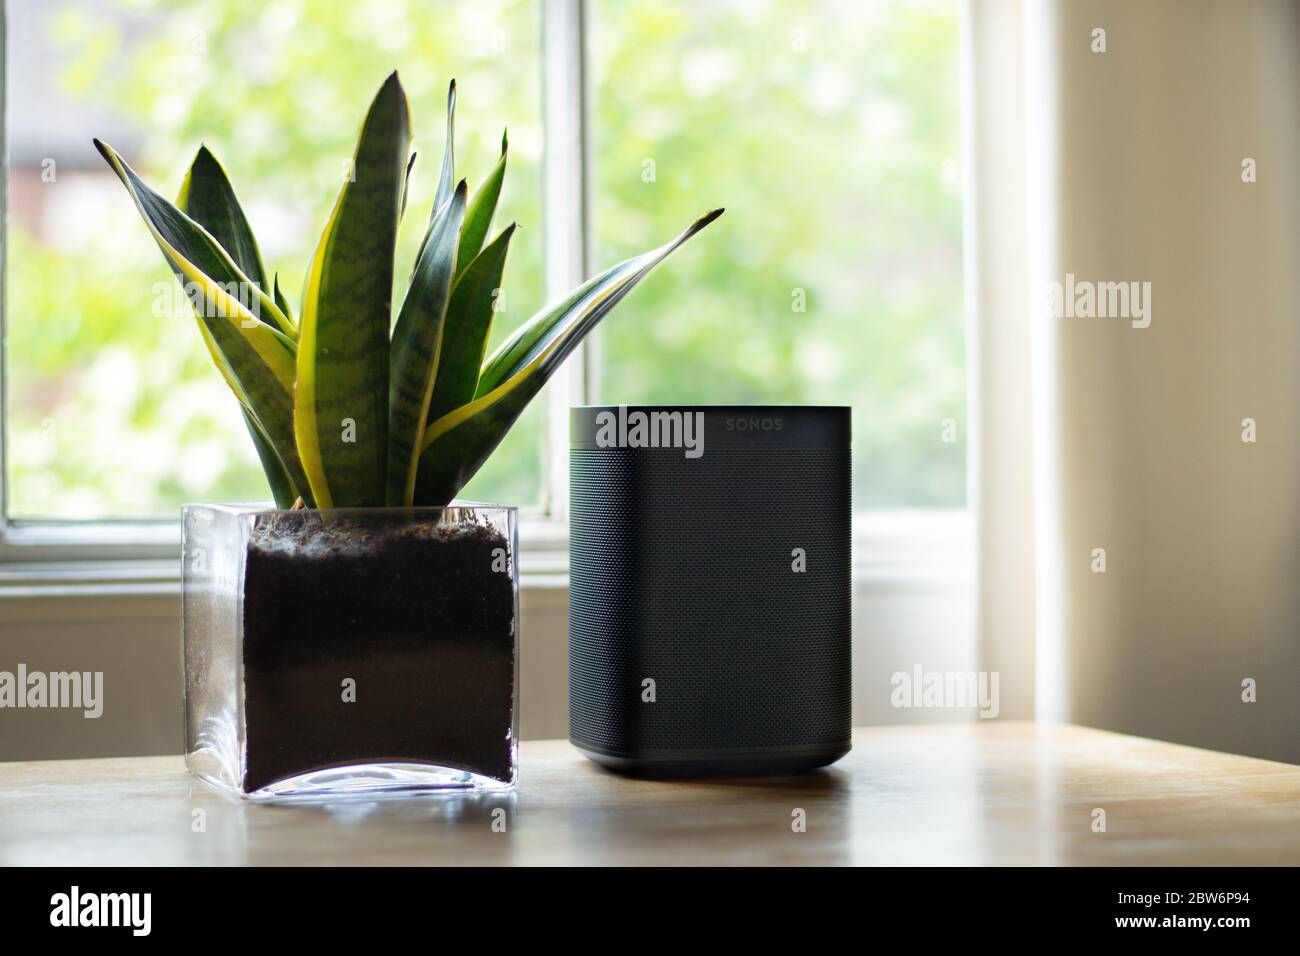 London, Großbritannien - Mai 09 2020: Ein Sonos Lautsprecher neben einer Pflanze in einem schönen Haus platziert. Stockfoto